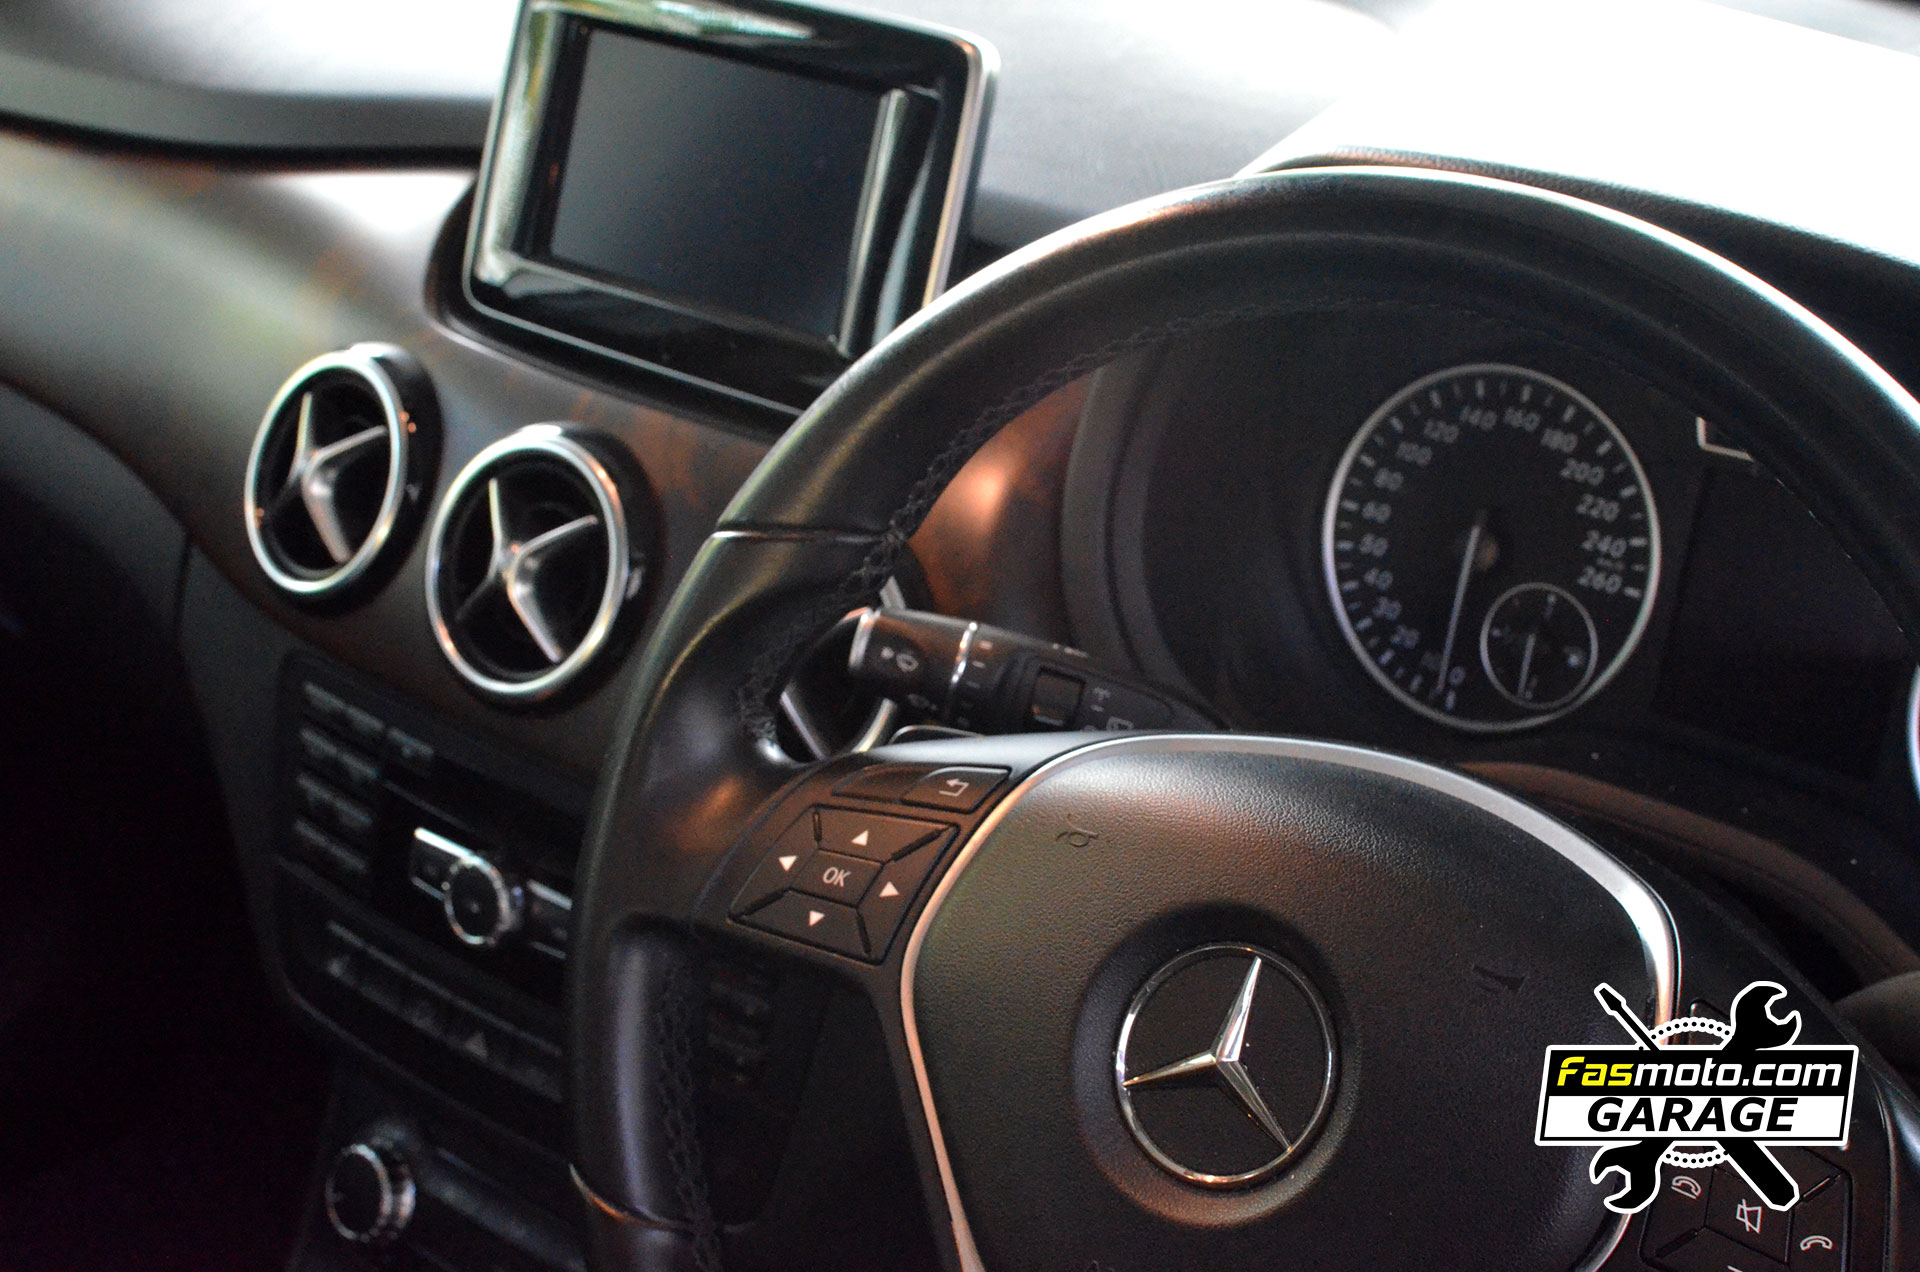 Mercedes Benz B200 B Class Rear Parking Camera install